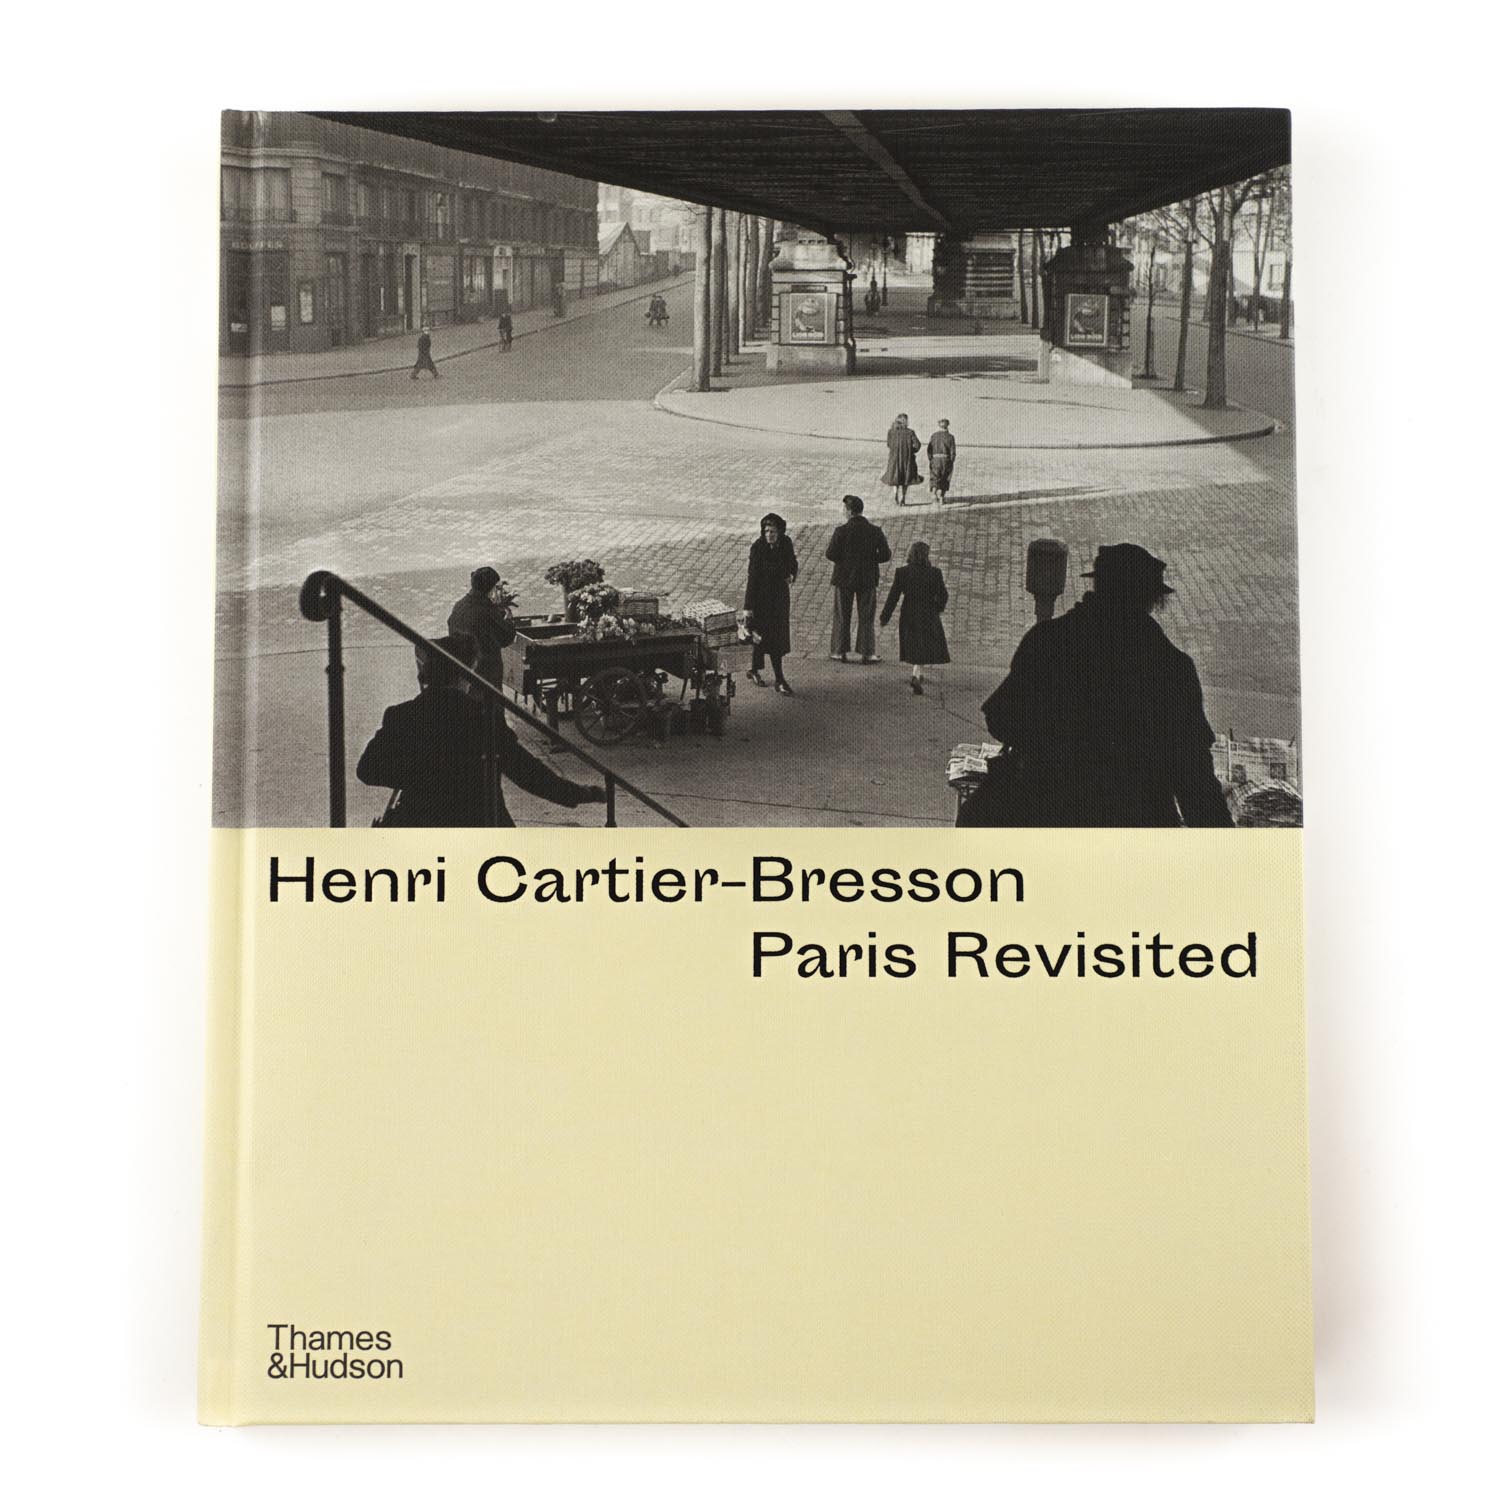 TThumbnail image for Henri Cartier-Bresson - Paris Revisited